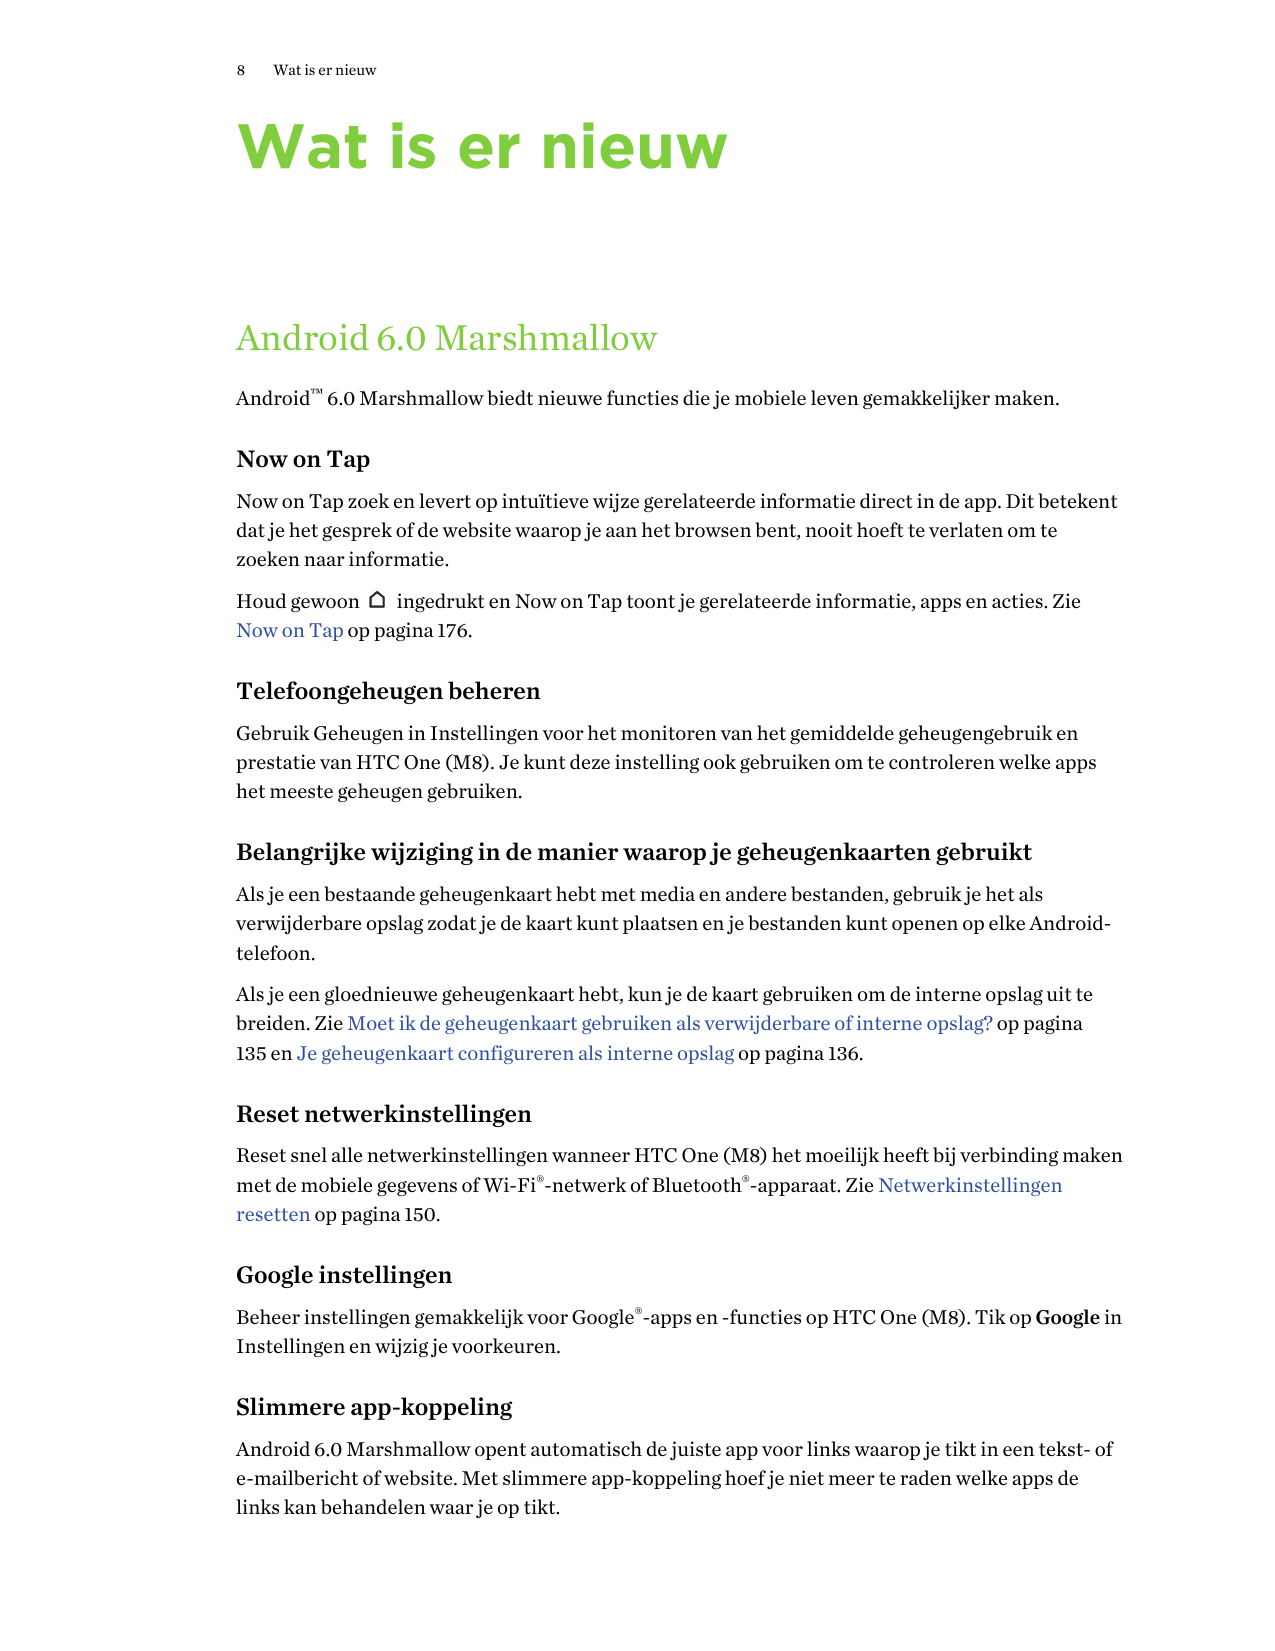 8Wat is er nieuwWat is er nieuwAndroid 6.0 MarshmallowAndroid™ 6.0 Marshmallow biedt nieuwe functies die je mobiele leven gemakk